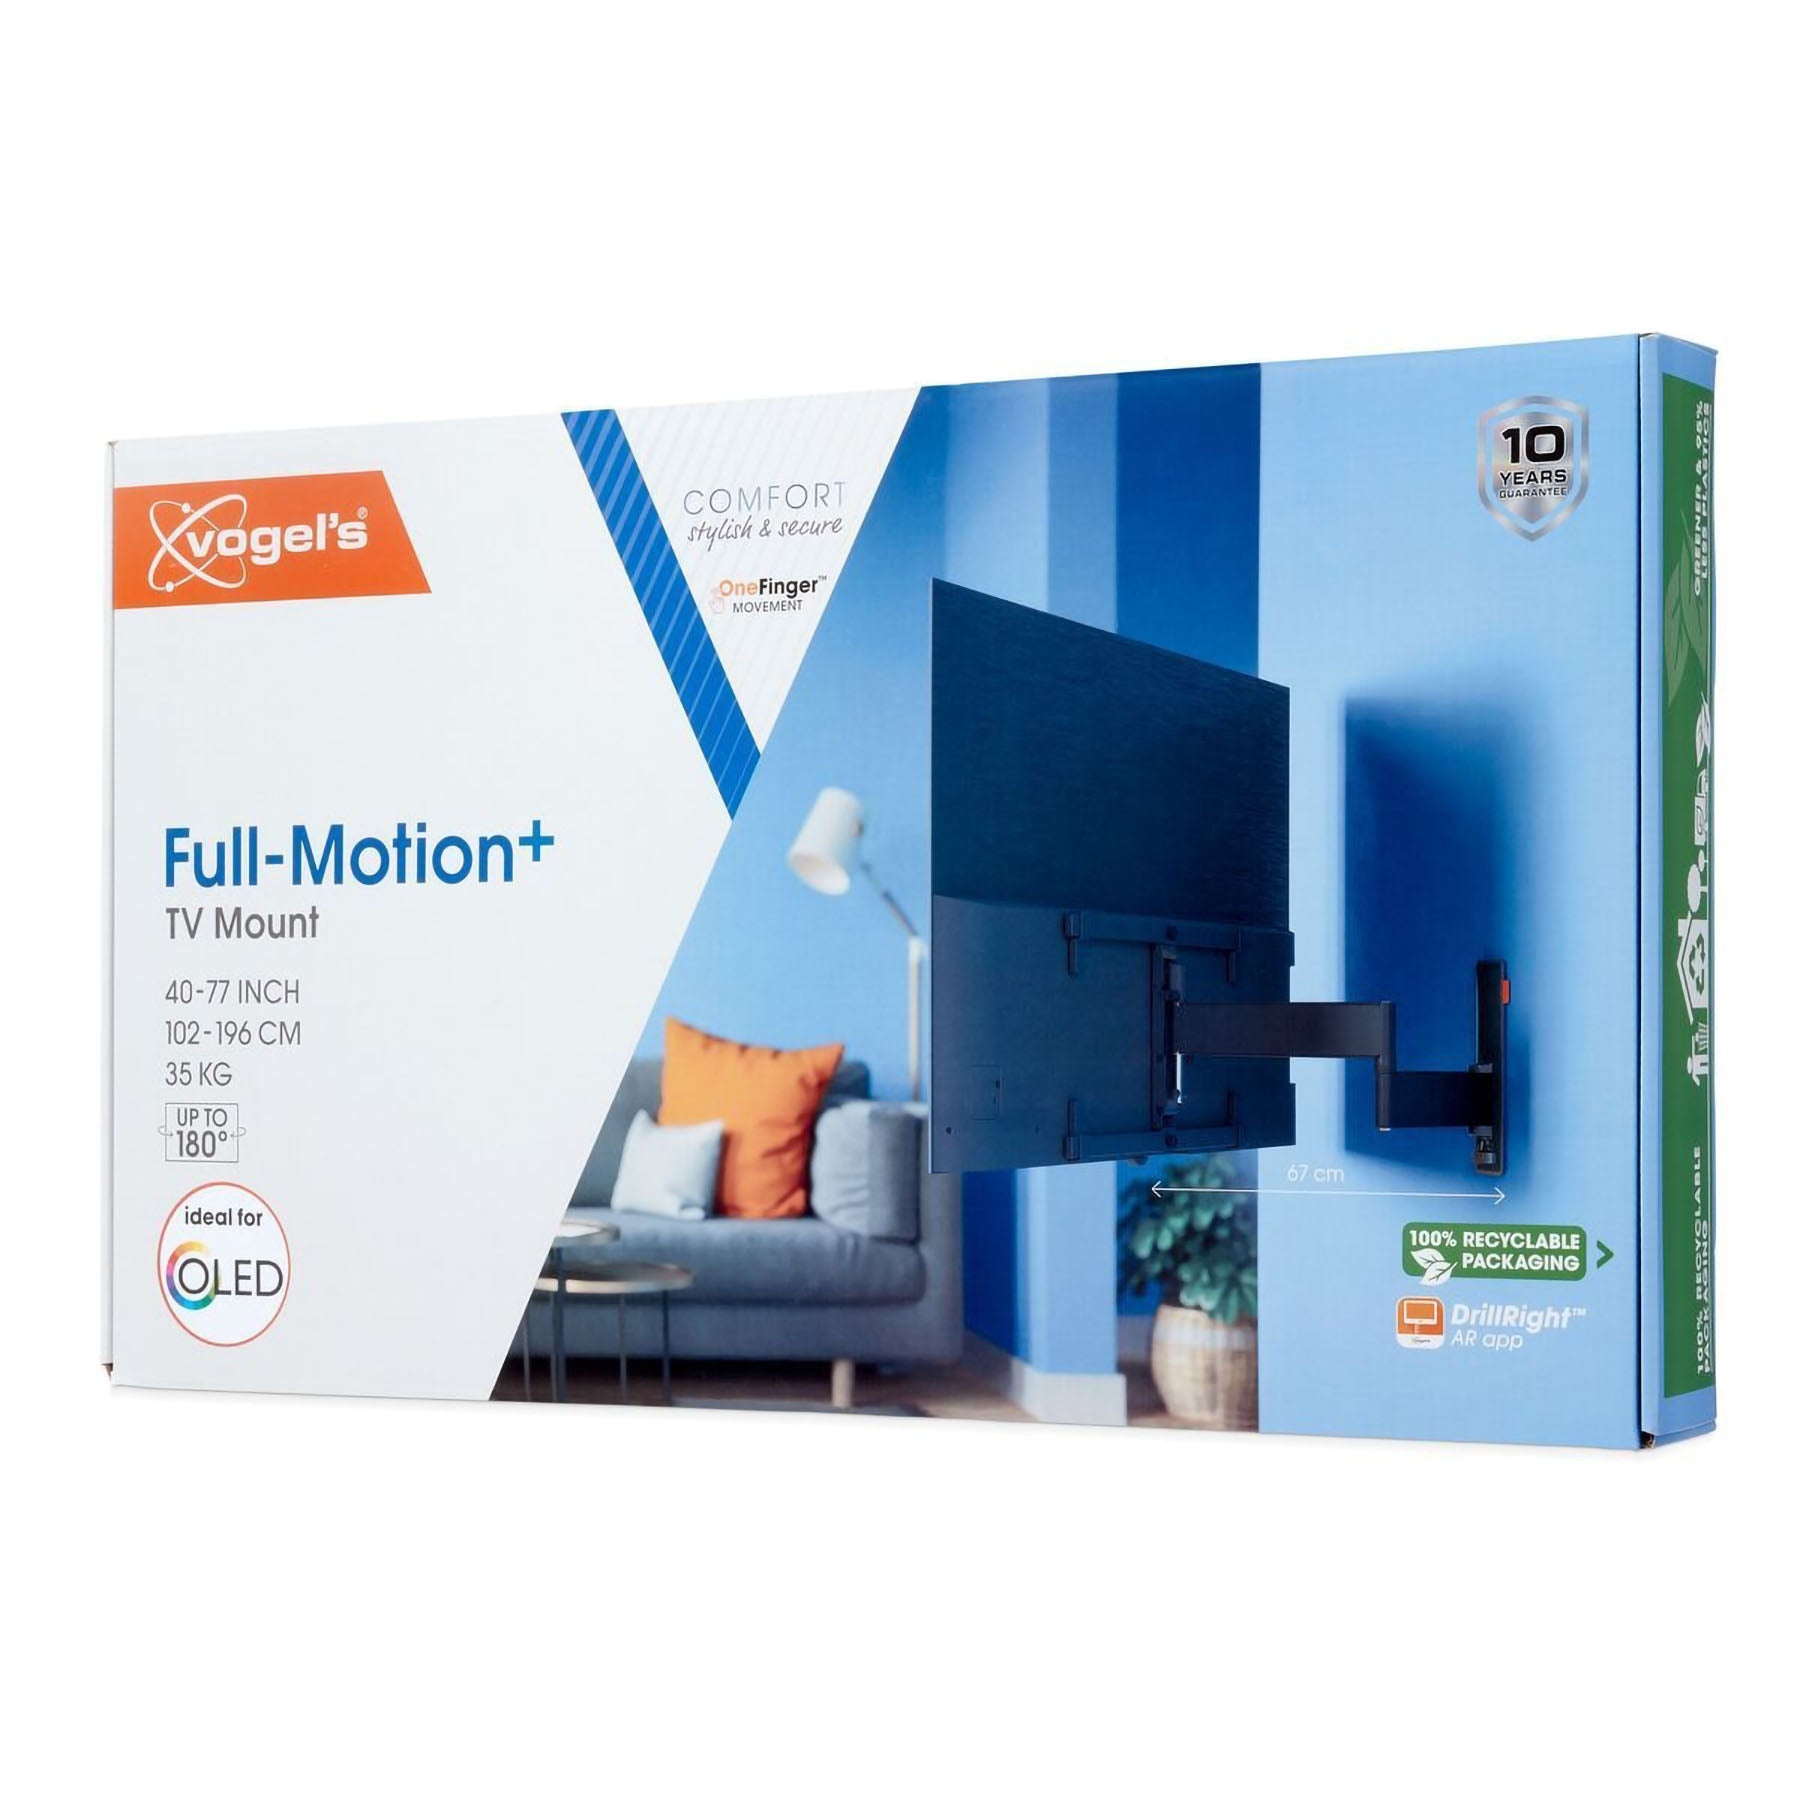 Vogel's TVM 3665 Full-Motion TV Wall Mount